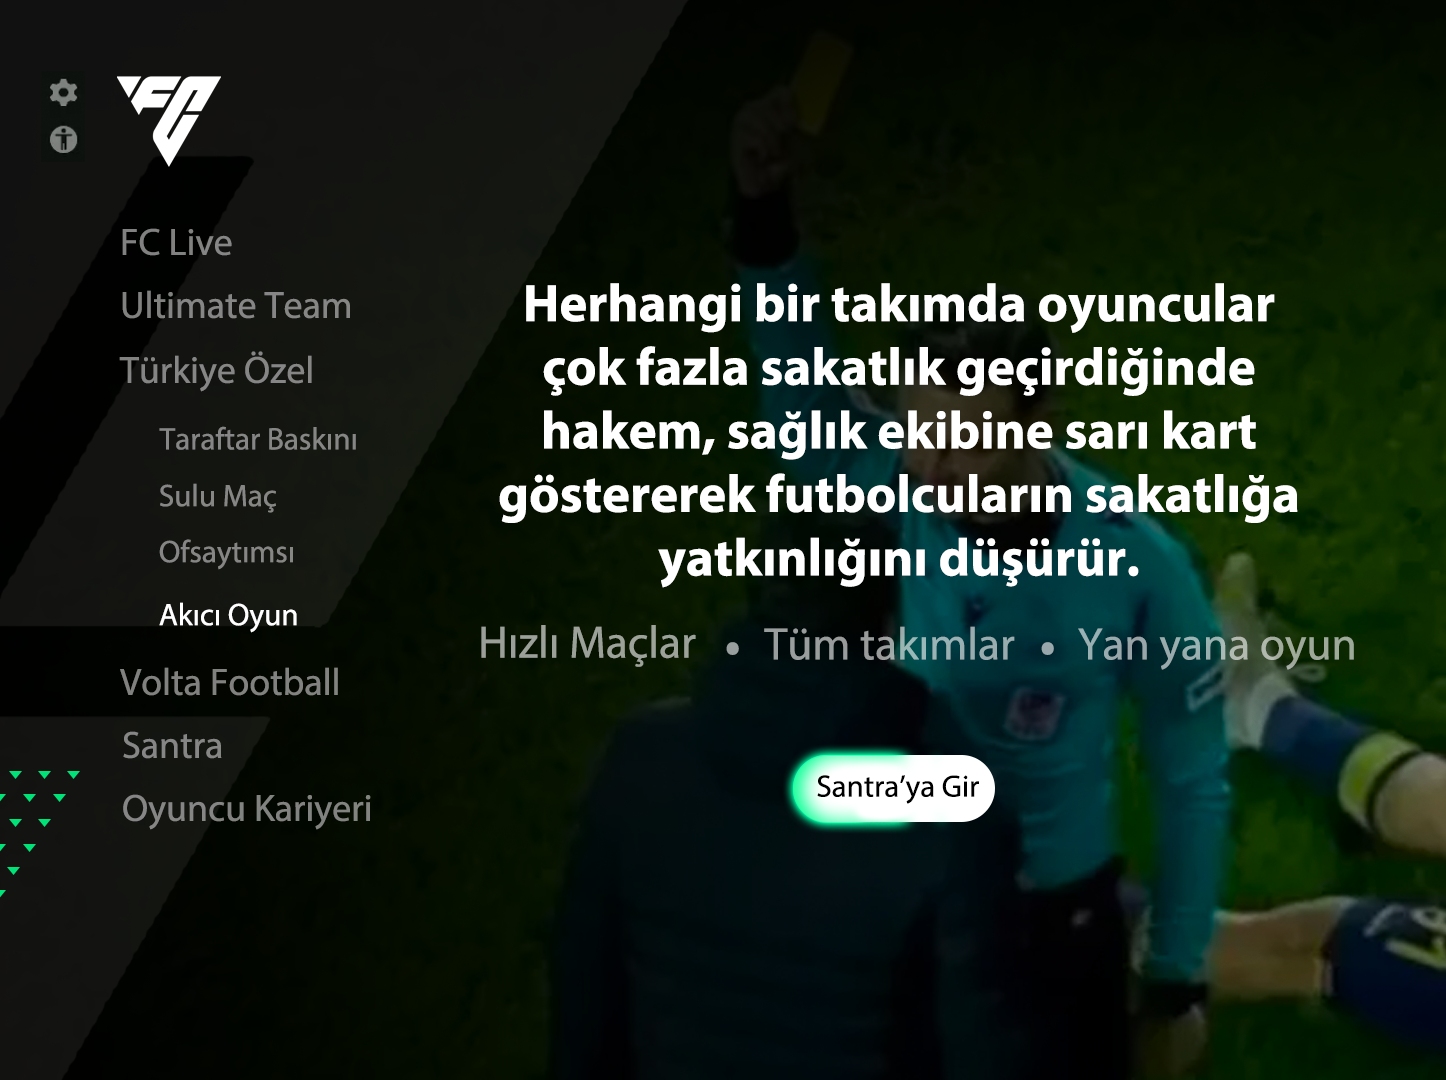 Ulaş Utku Bozdoğan: Böyle Lige Böyle Oyun: FC 24'te Türk Futboluna Özel Modlar ve Taktikler Olsa Nasıl Olurdu? 35